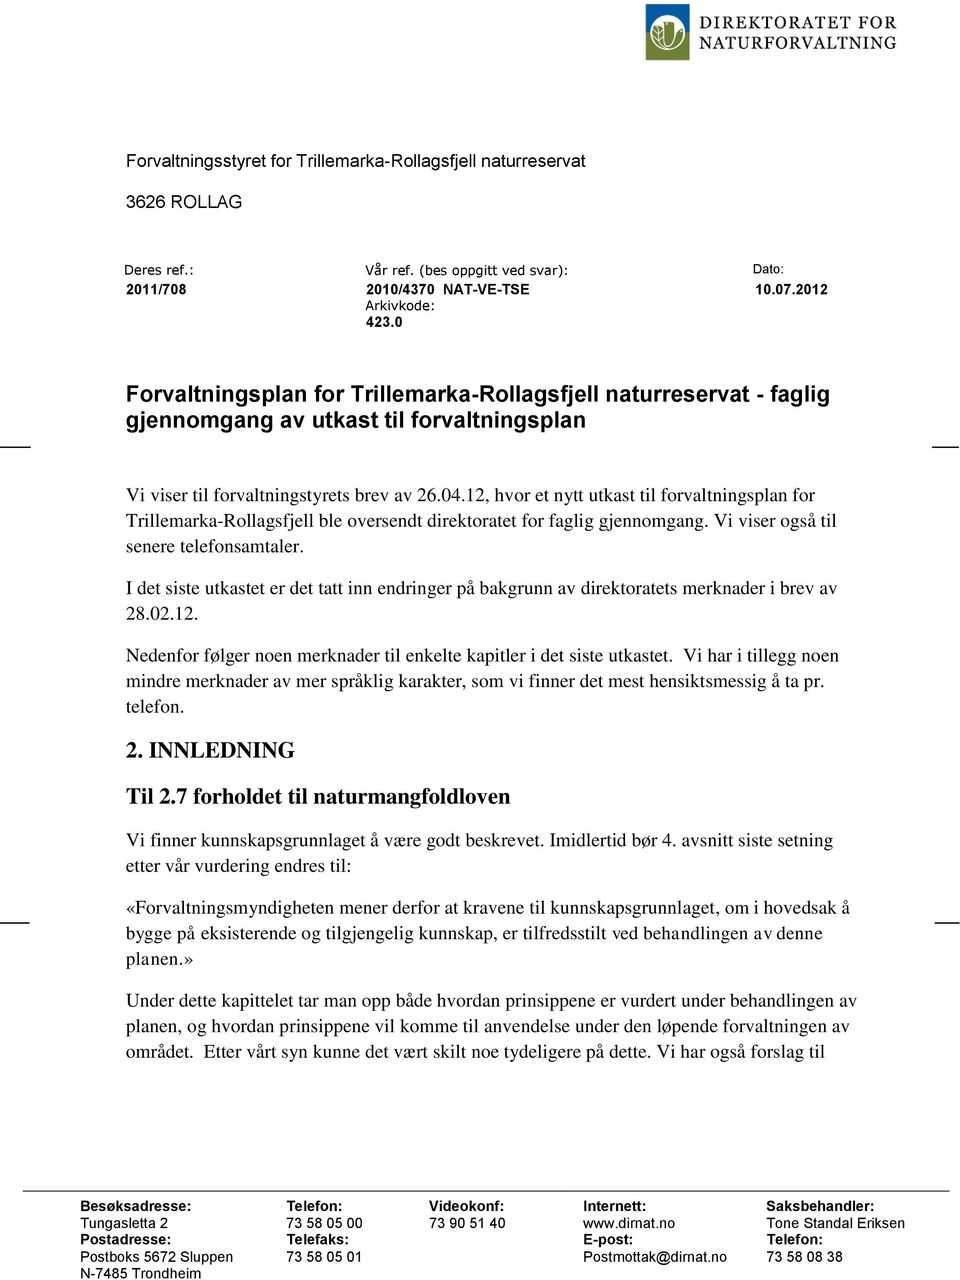 12, hvor et nytt utkast til forvaltningsplan for Trillemarka-Rollagsfjell ble oversendt direktoratet for faglig gjennomgang. Vi viser også til senere telefonsamtaler.